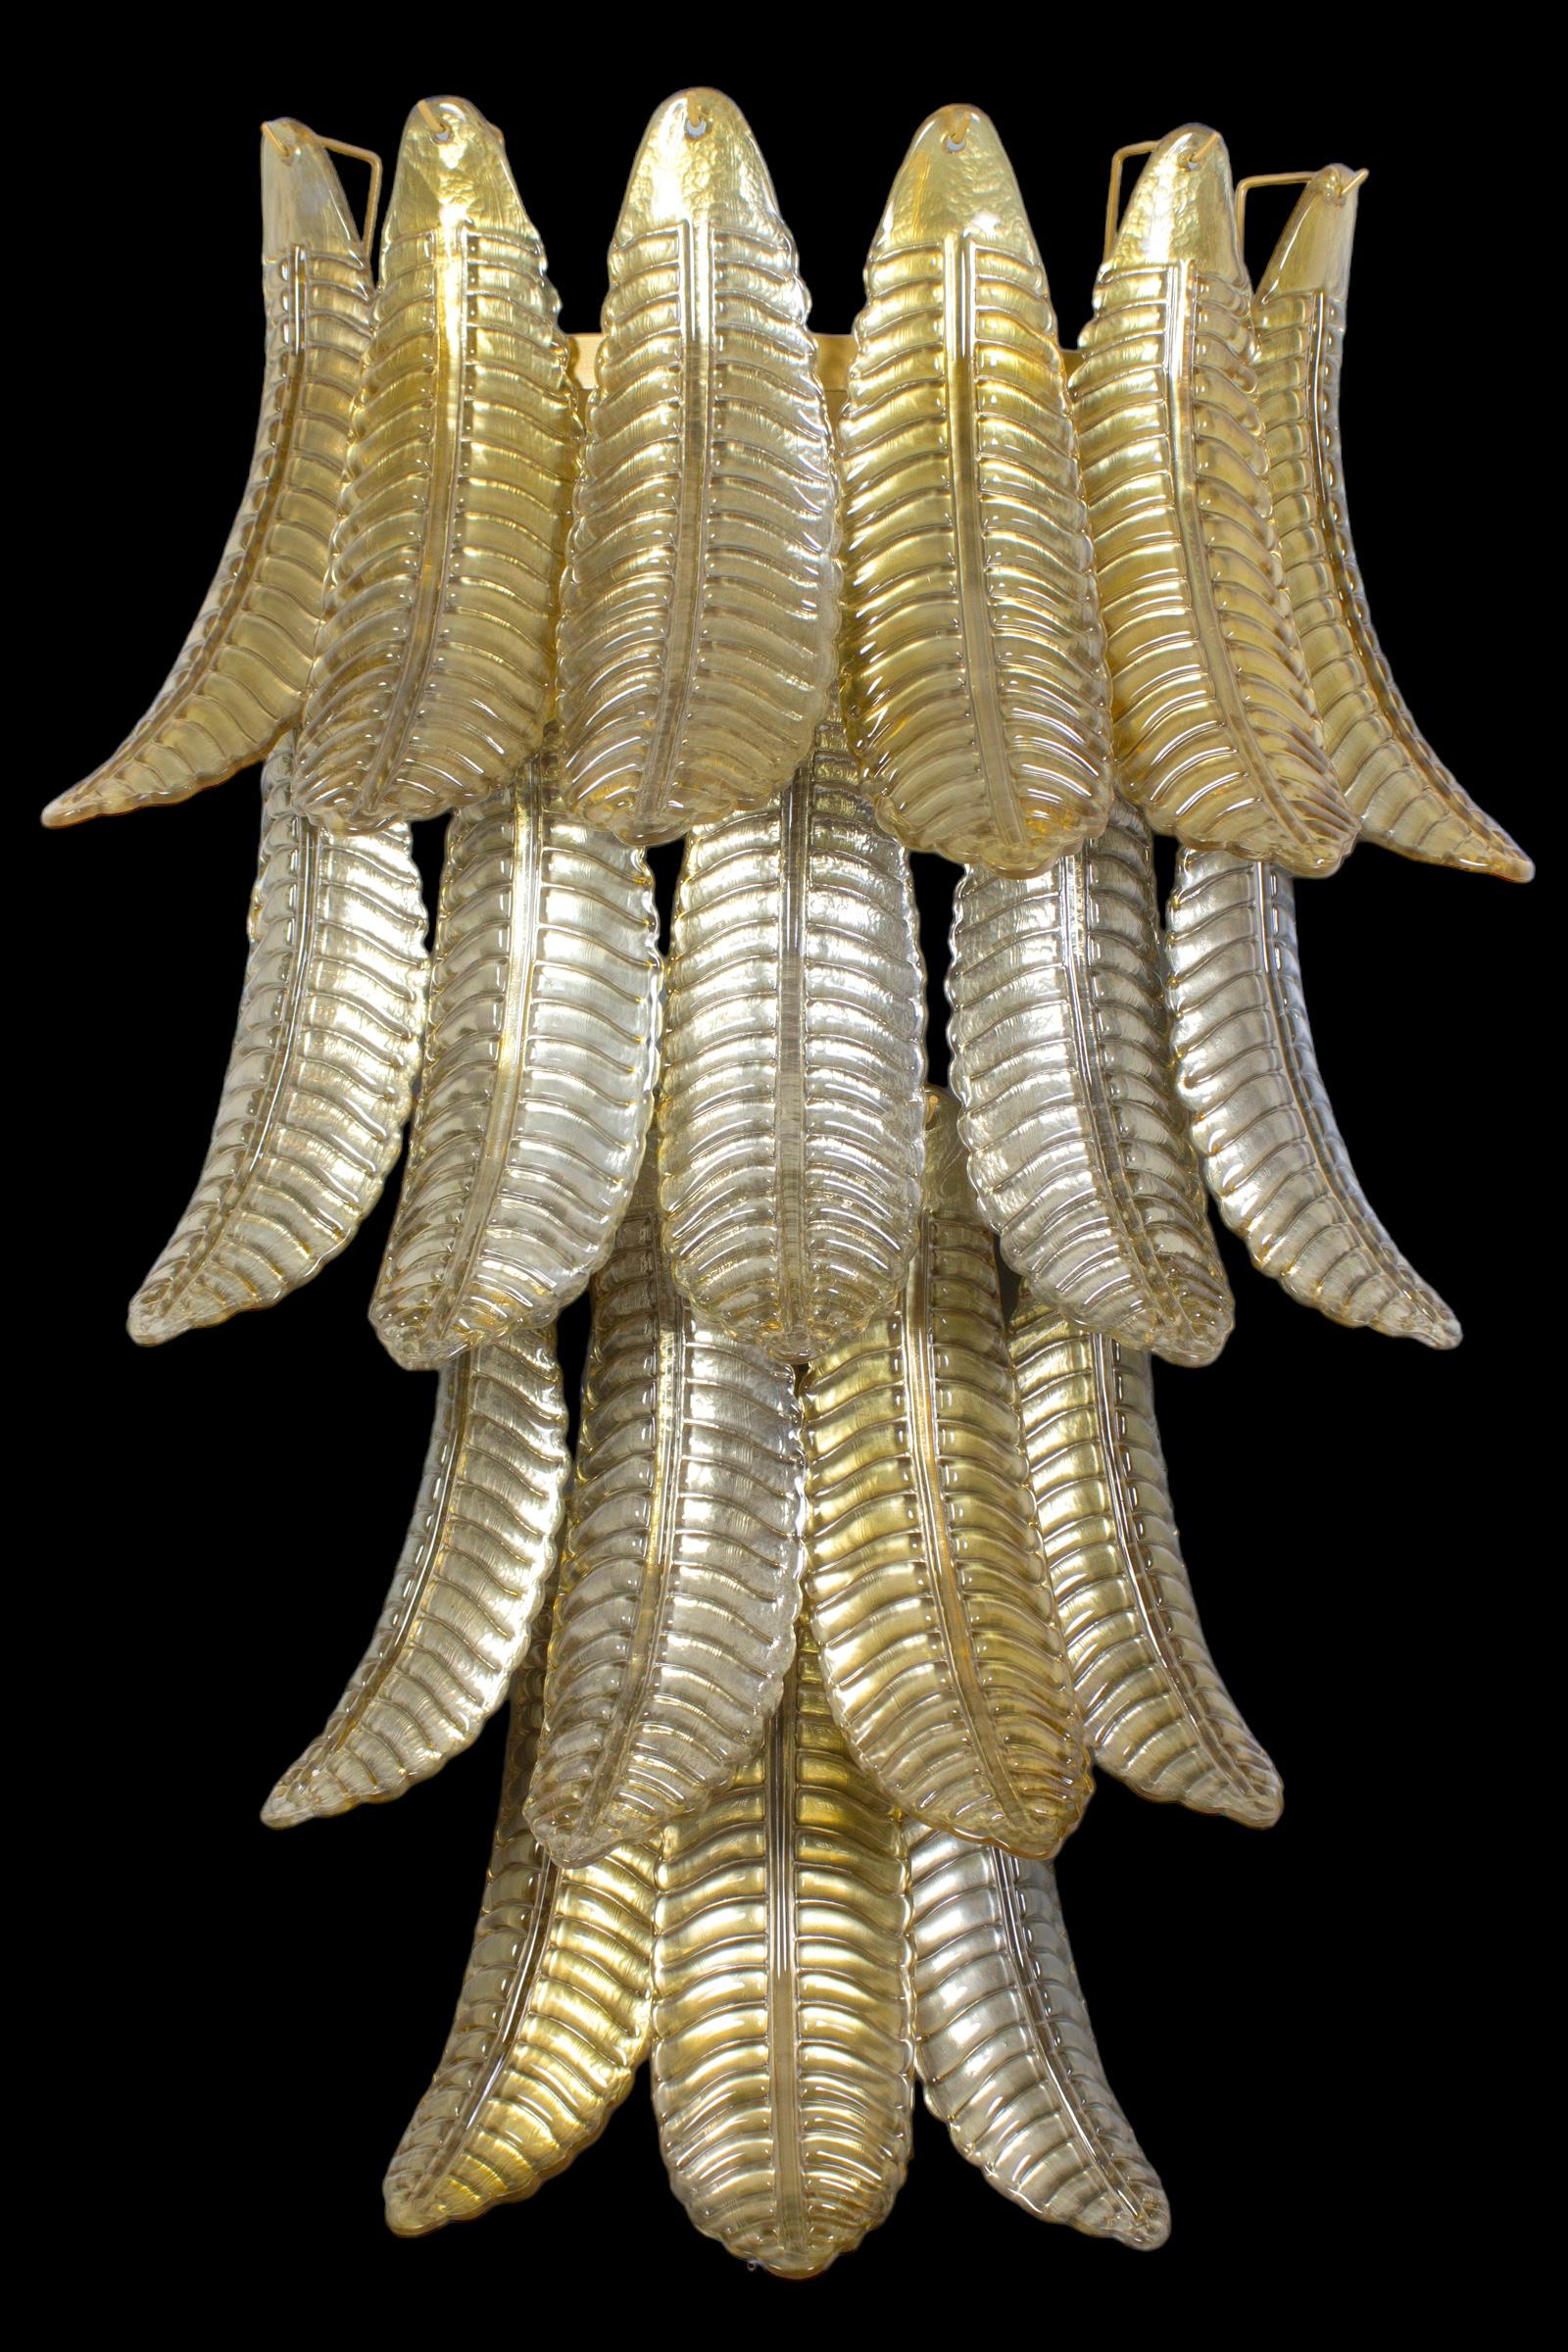 Paar von  Großer Goldfarn  Leuchter aus Murano-Glas mit Messingbeschlägen.
Die Gläser sind in perfektem Zustand. 
Drei  sind 9 E 14 Glühbirnen. Wir können für Ihr Land Standards verdrahten.
Diese Leuchte kann zerlegt und die Gläser zum einfachen